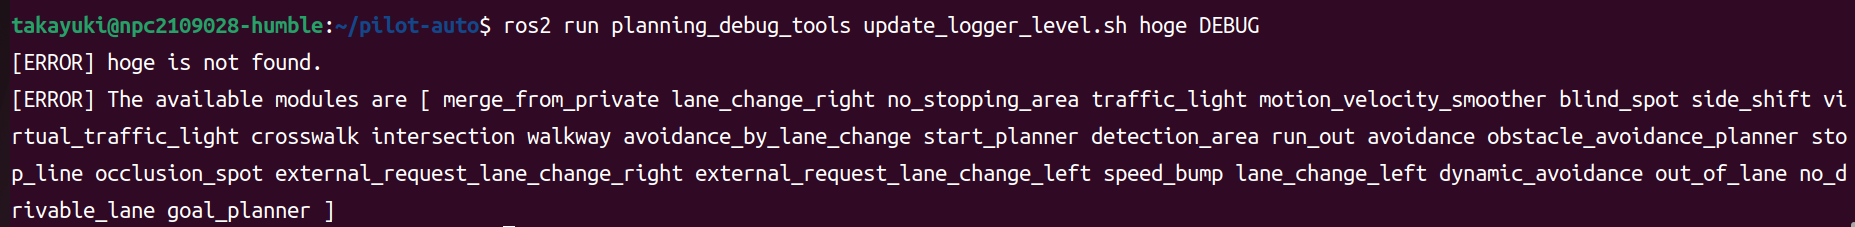 logging_level_updater_typo